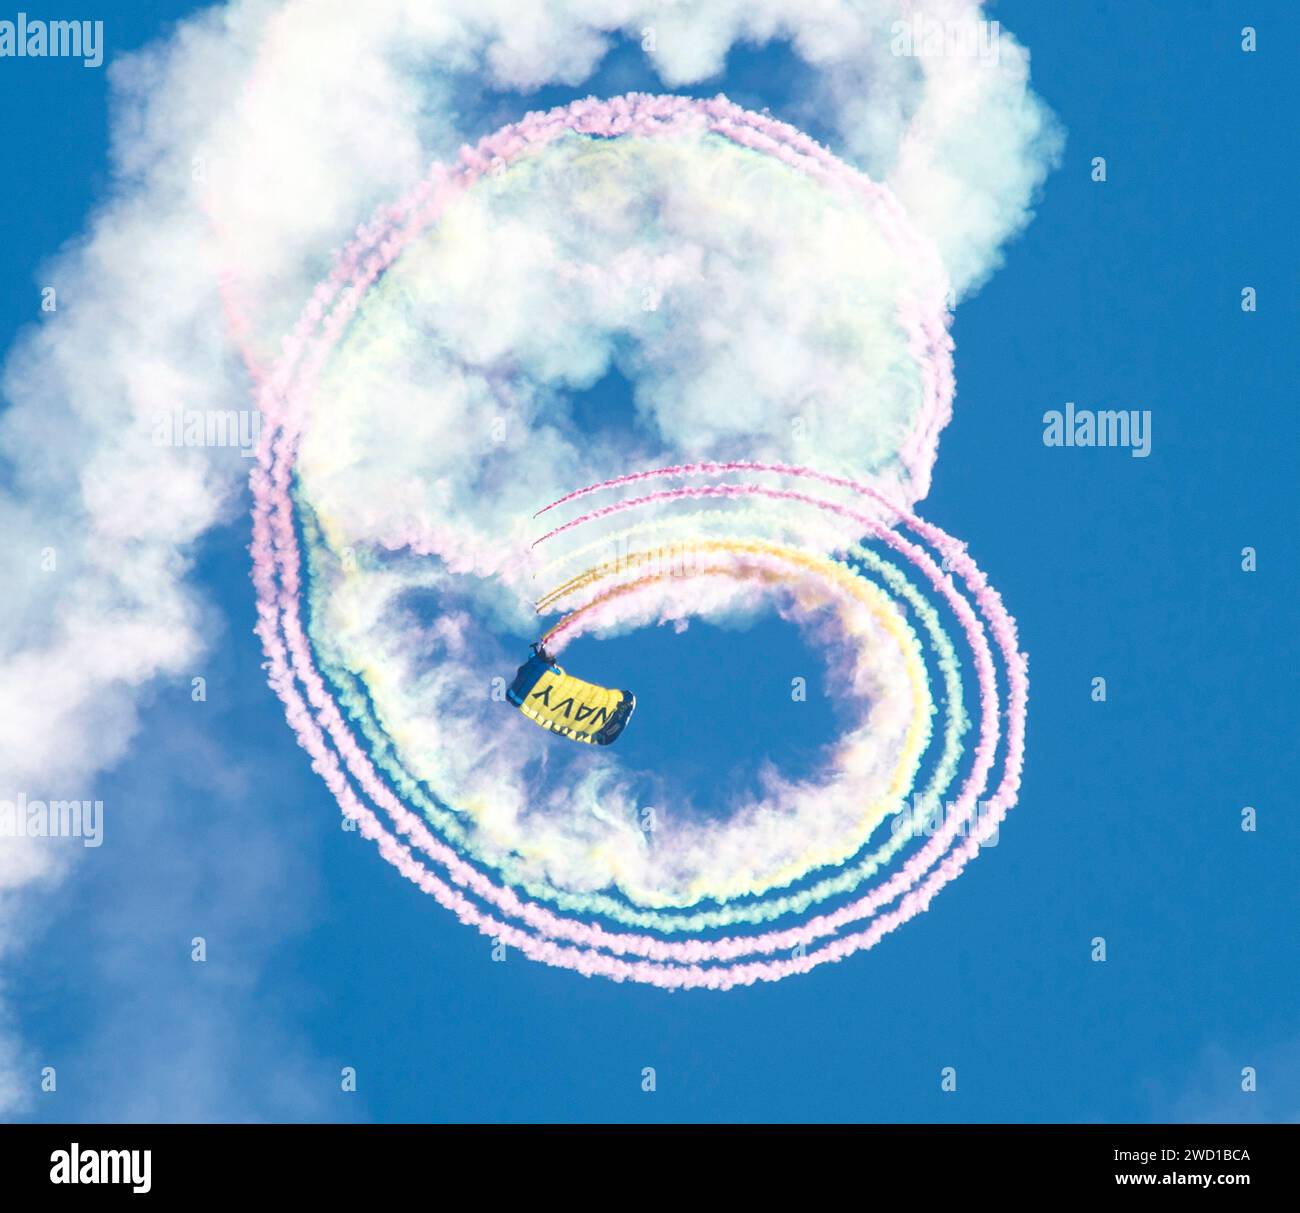 Ein Mitglied des Fallschirmvorführungsteams der US Navy verfolgt Rauch während einer Fallschirmvorführung. Stockfoto